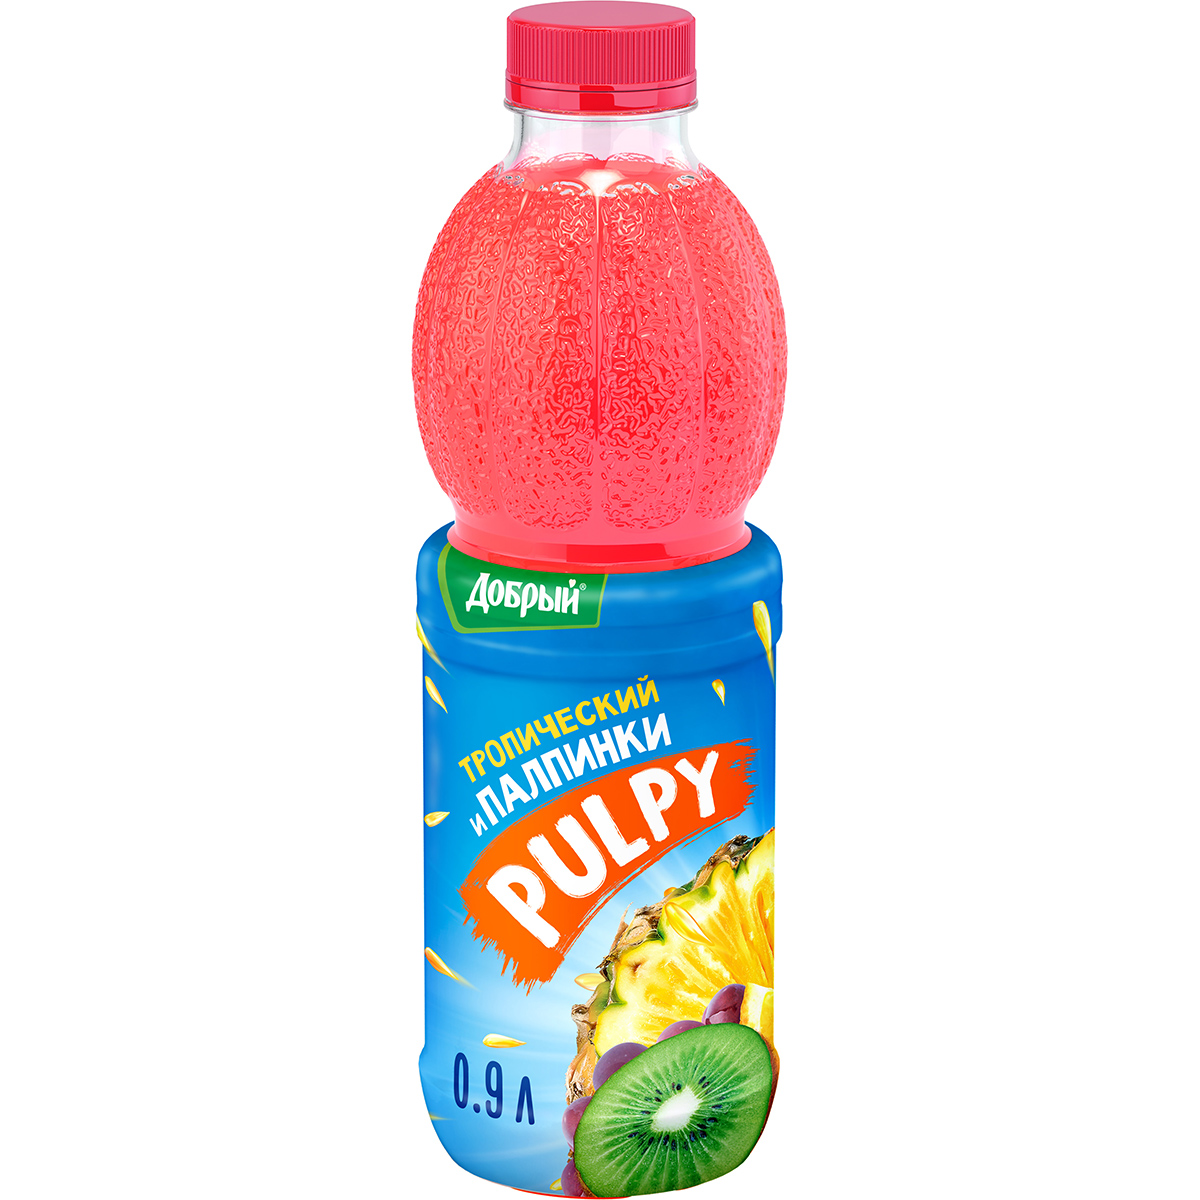 Напиток Pulpy сокосодержащий Тропический с мякотью 0,9 л напиток сокосодержащий добрый pulpy тропический с мякотью 450 мл